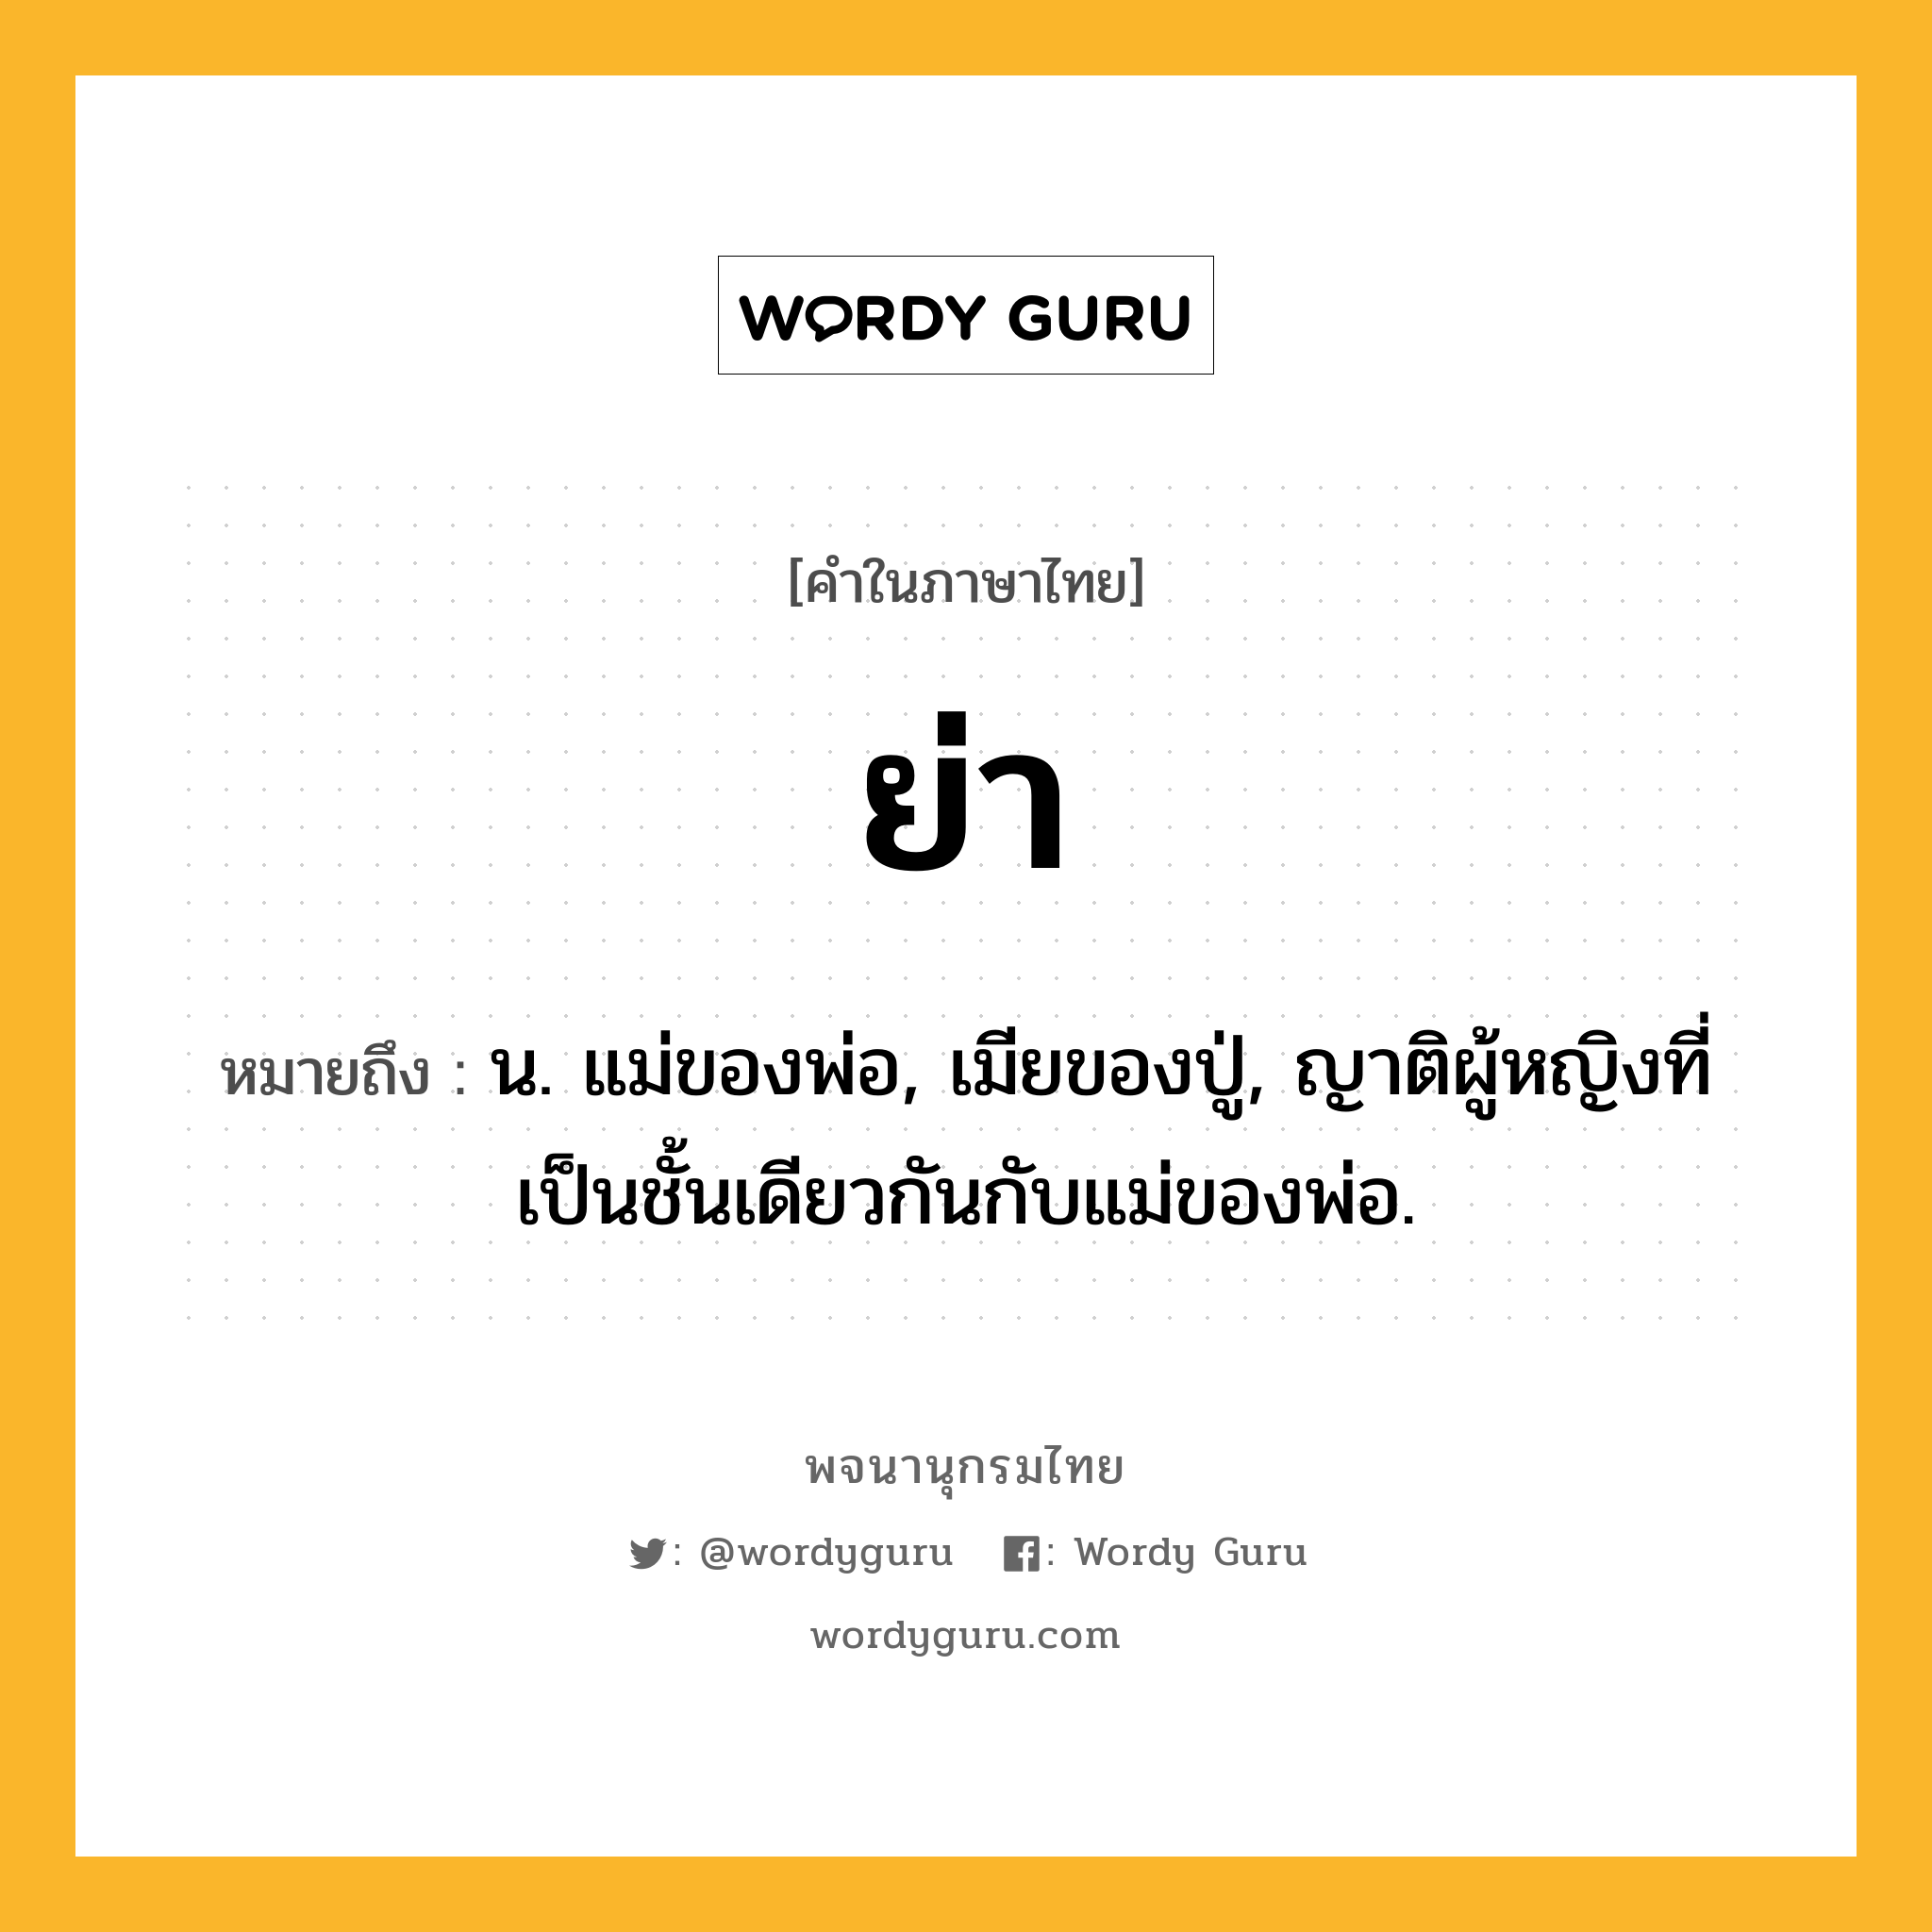 ย่า ความหมาย หมายถึงอะไร?, คำในภาษาไทย ย่า หมายถึง น. แม่ของพ่อ, เมียของปู่, ญาติผู้หญิงที่เป็นชั้นเดียวกันกับแม่ของพ่อ.